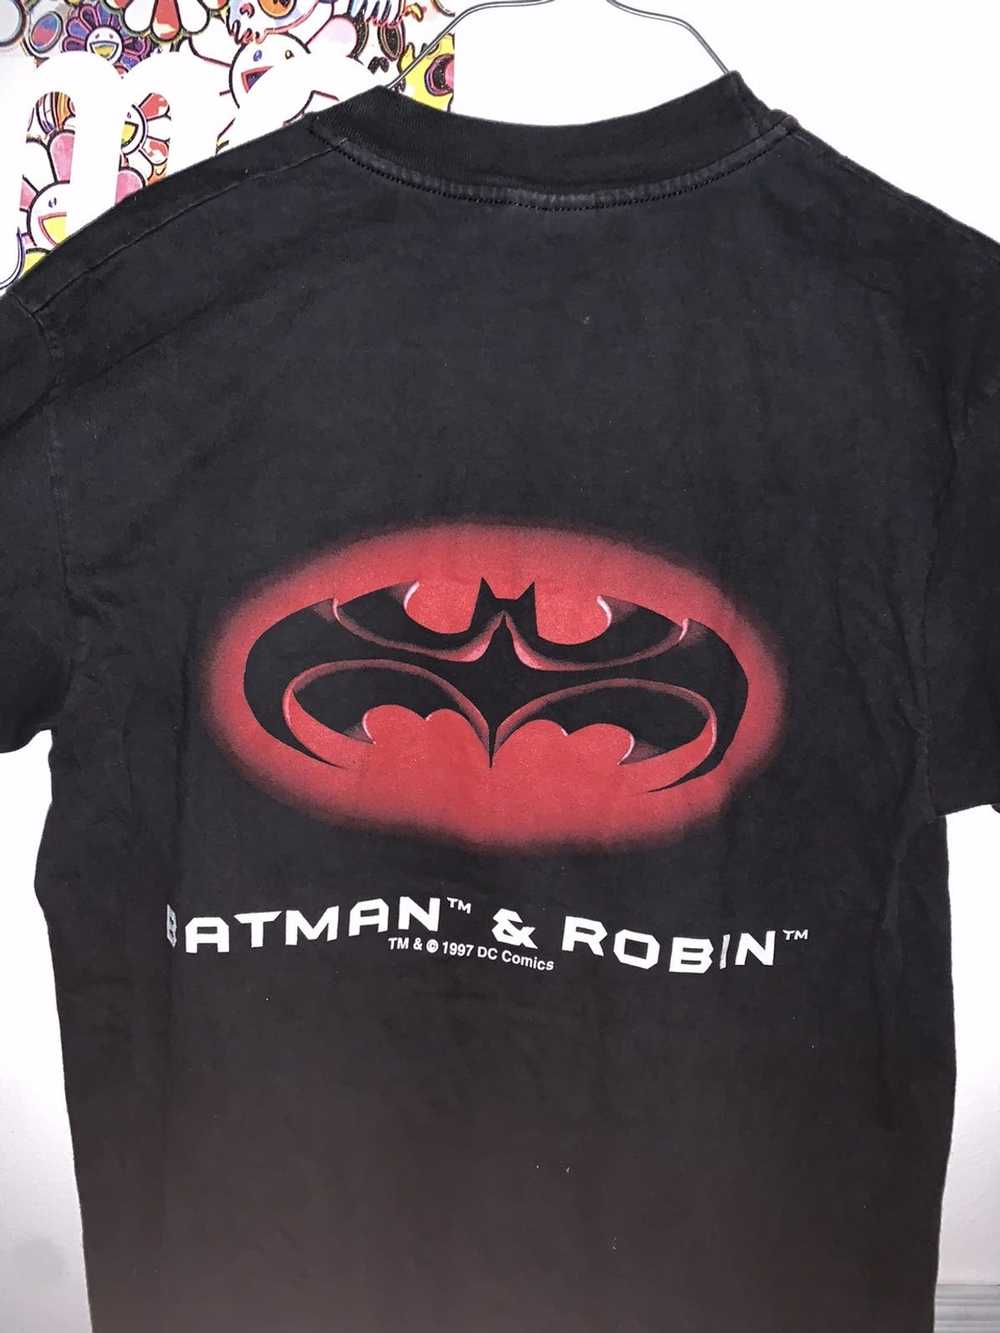 Vintage Vintage Batman & Robin Tee - image 3